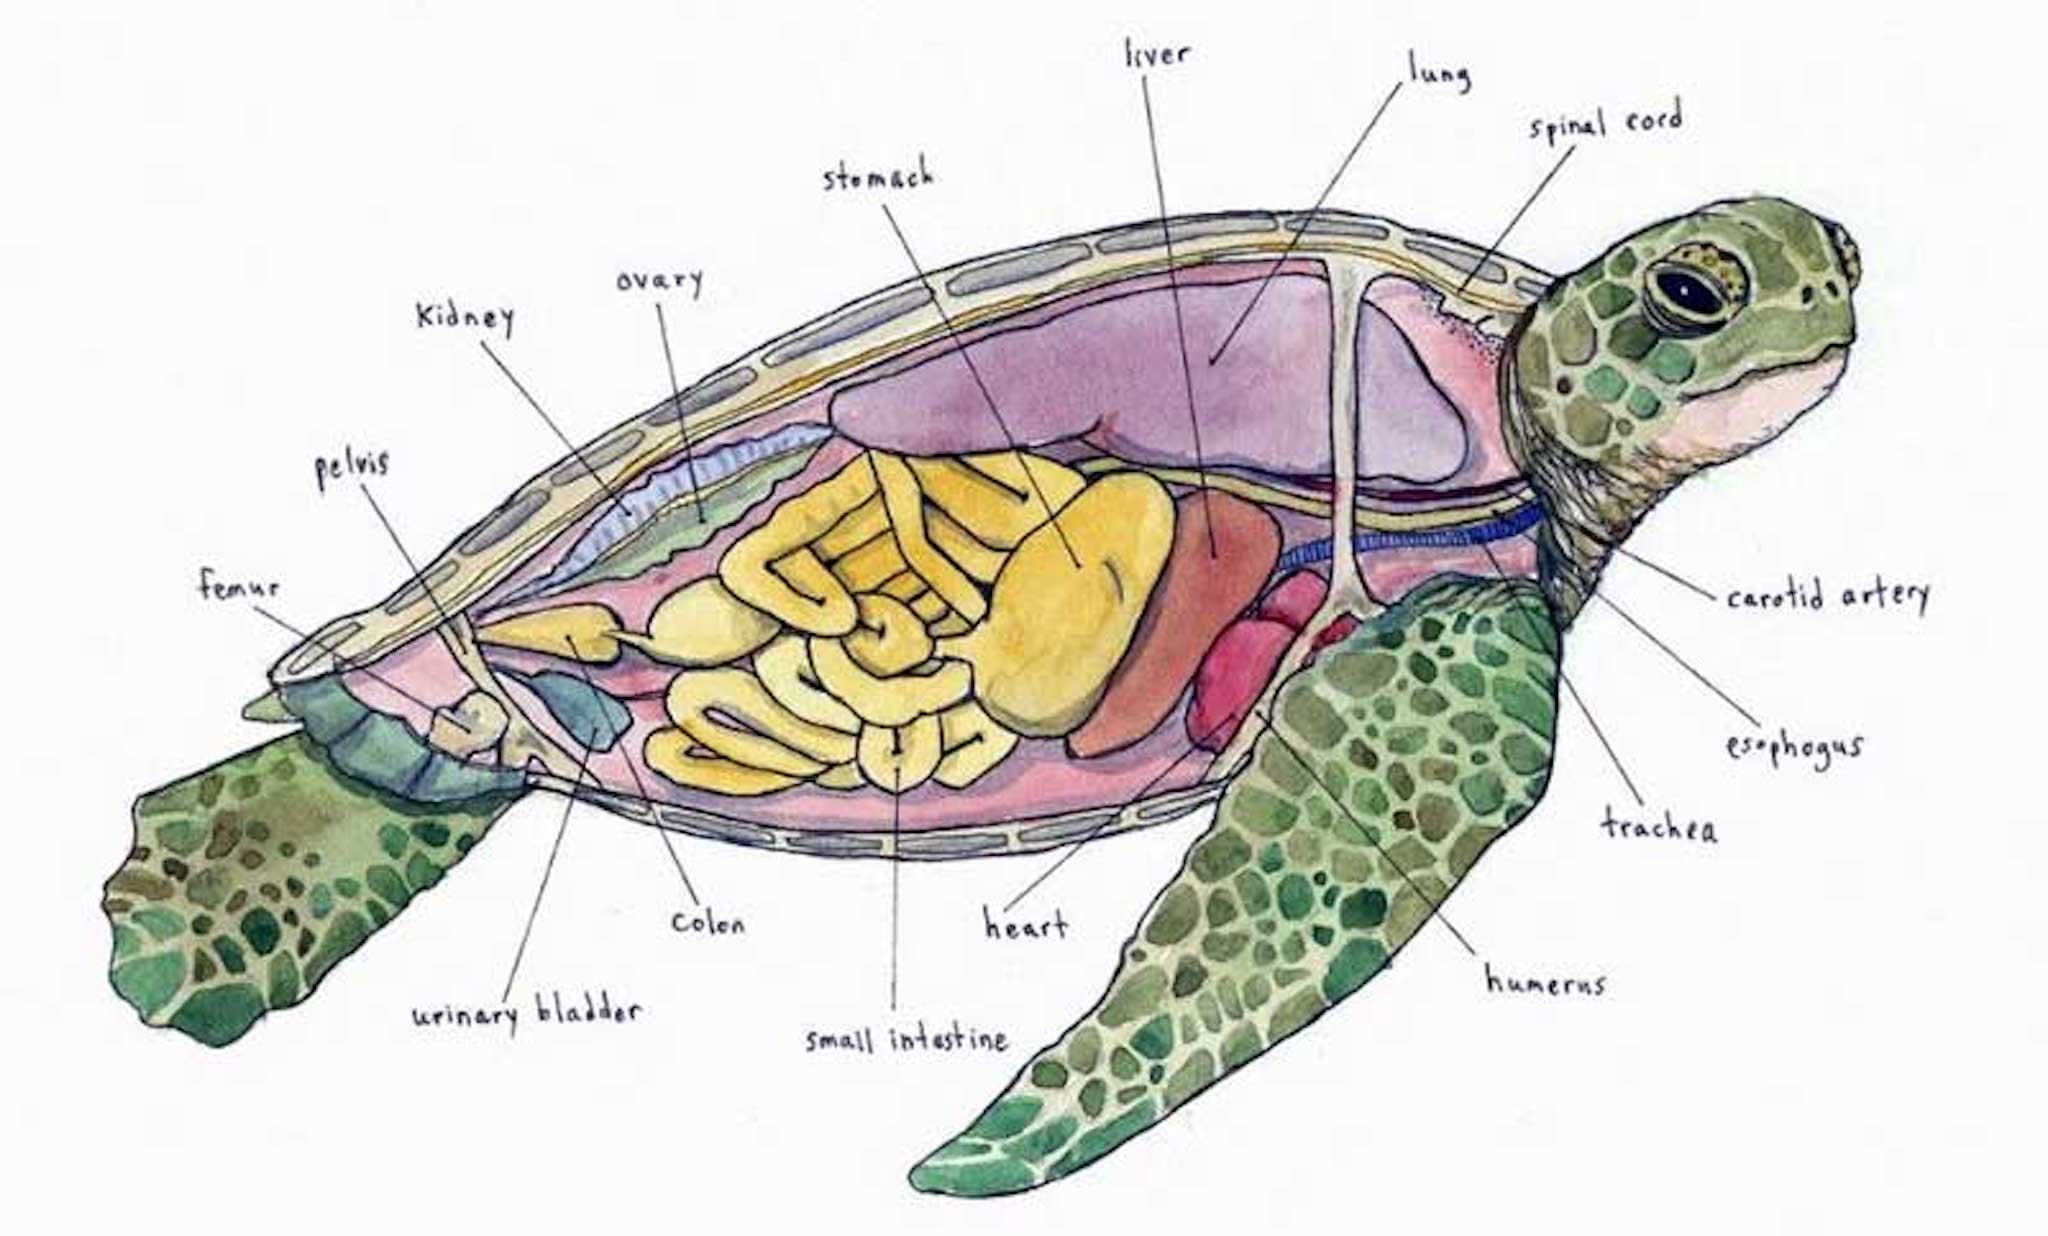 Rùa Vẽ Đông - Eastern Painted Turtle: Đã bao giờ bạn nghe về loài rùa Vẽ Đông chưa? Đây là một loài rùa có vẻ ngoài đặc biệt và đáng yêu với vẻ mặt dễ thương và màu sắc tuyệt đẹp. Hãy truy cập vào trang web ruacanh-ruacanhtycheshop và khám phá về loại rùa này, cùng với những kiến thức và thông tin thú vị.